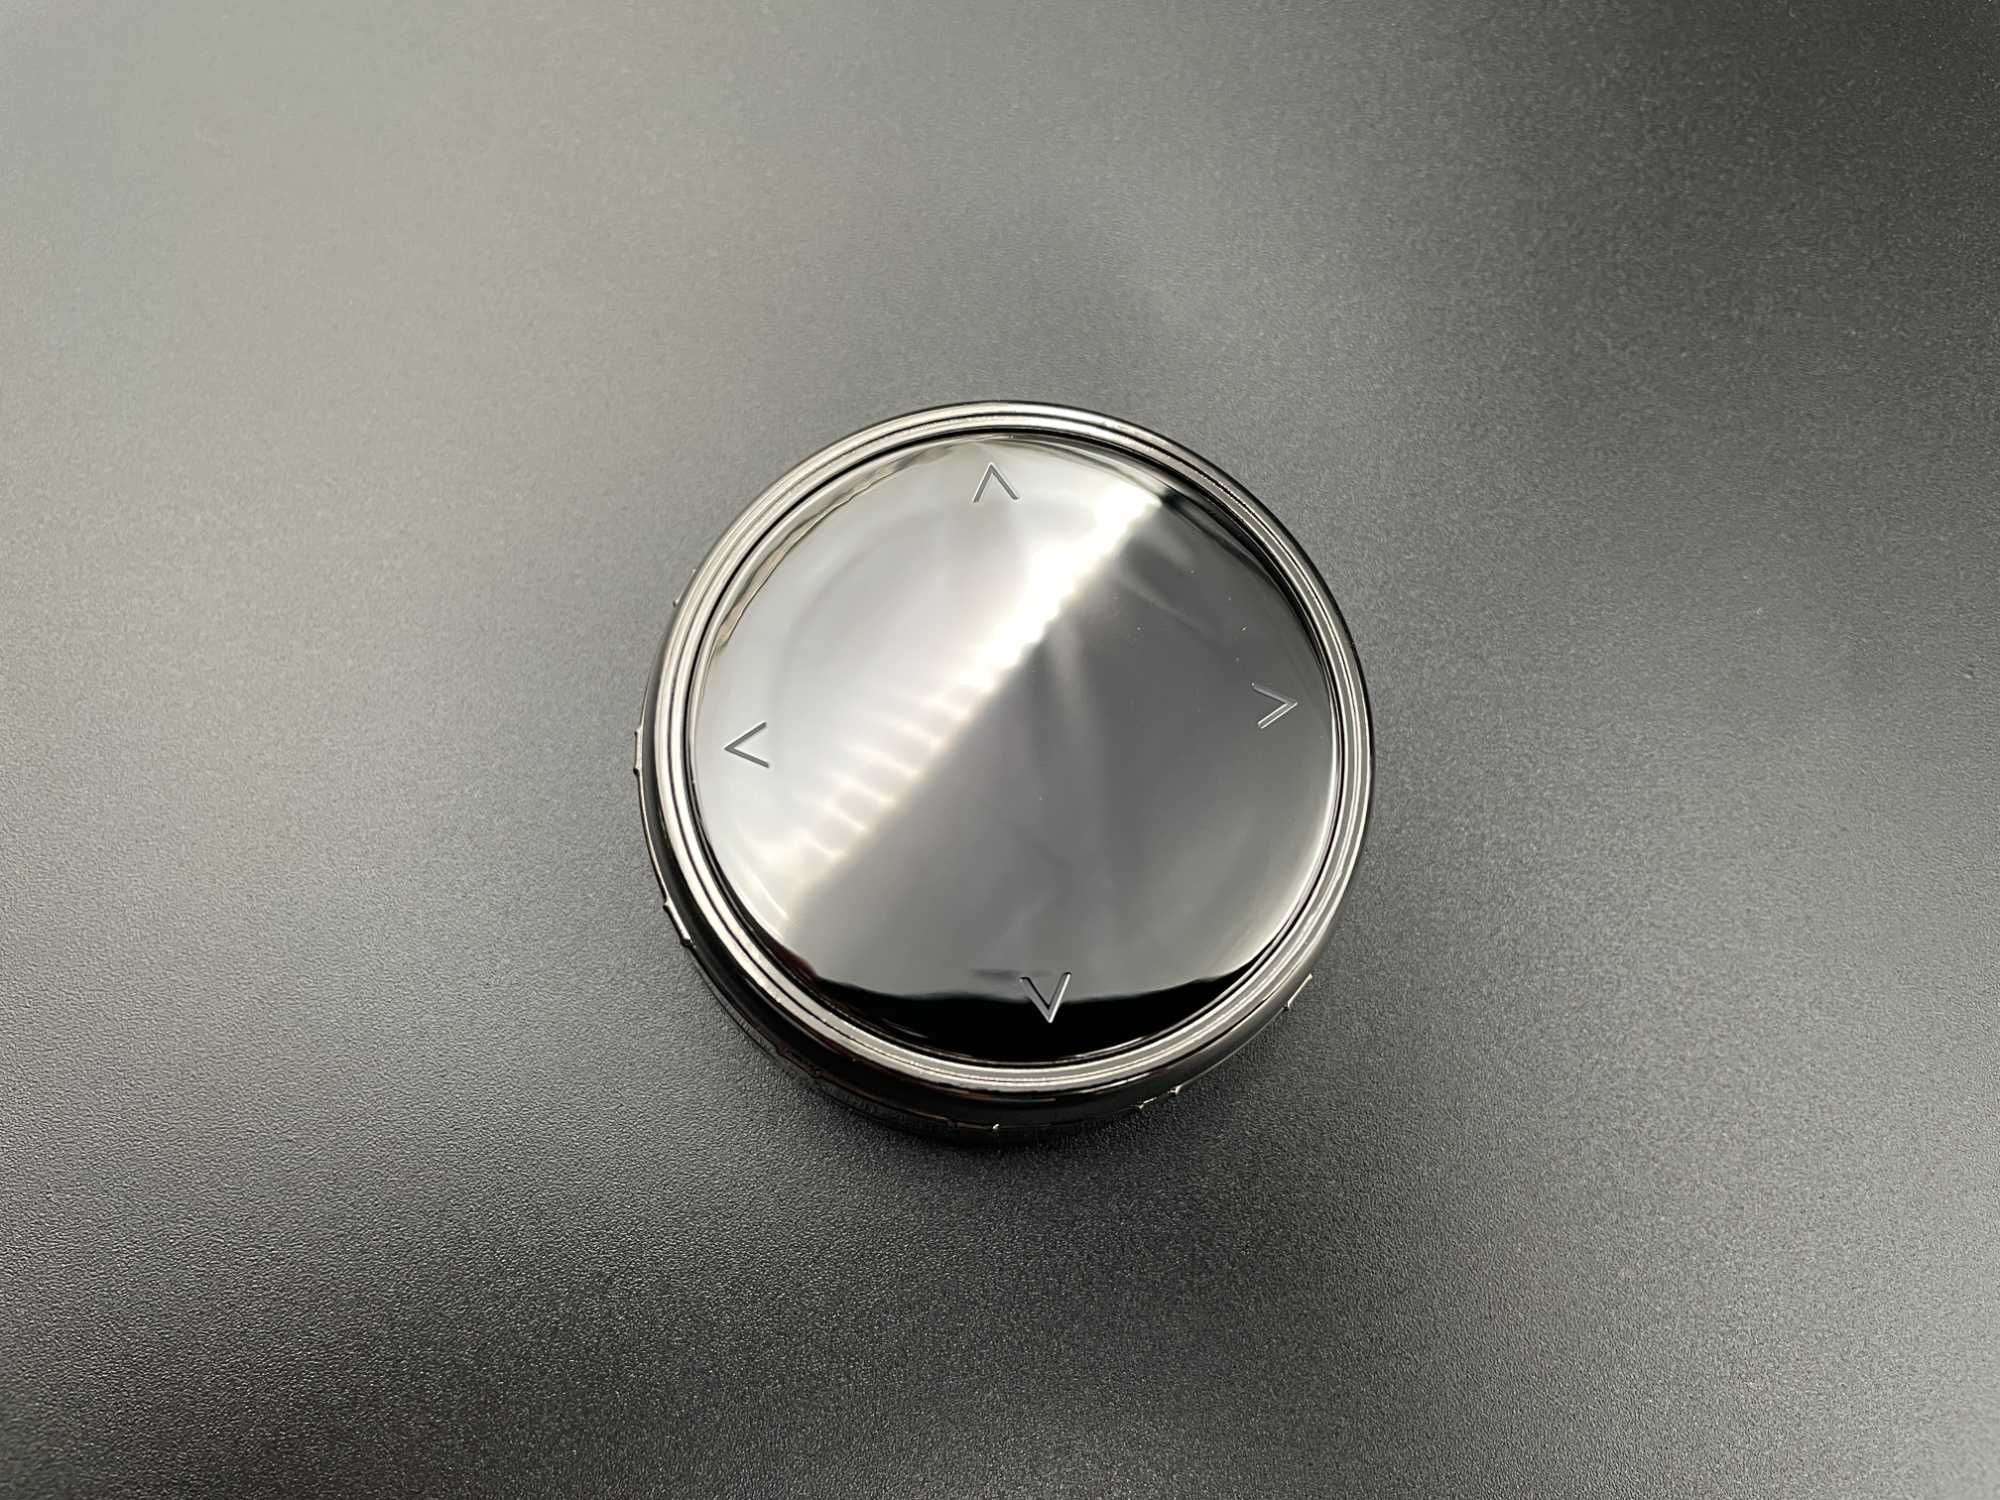 Rotita buton consola multimedia ceramic iDrive compatibil BMW